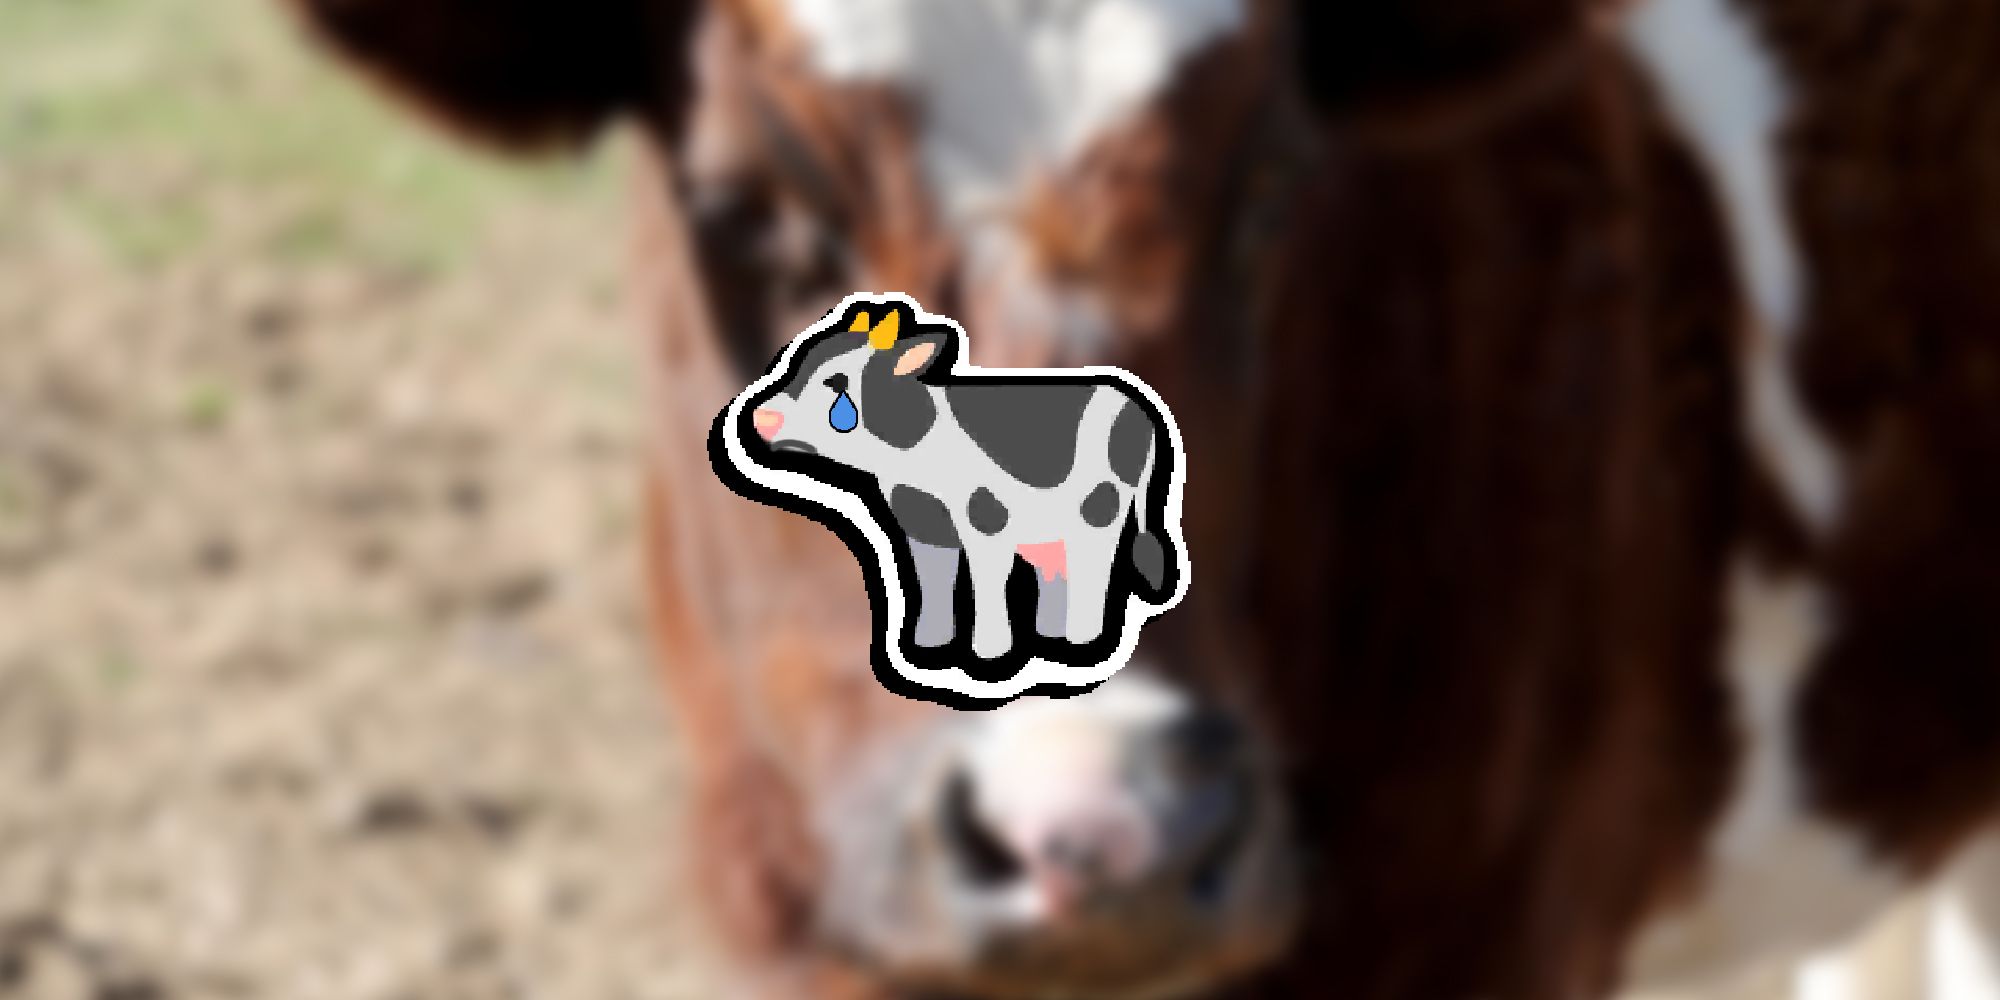 Super Auto Pets - Грустная корова, наложенная на изображение настоящей коровы